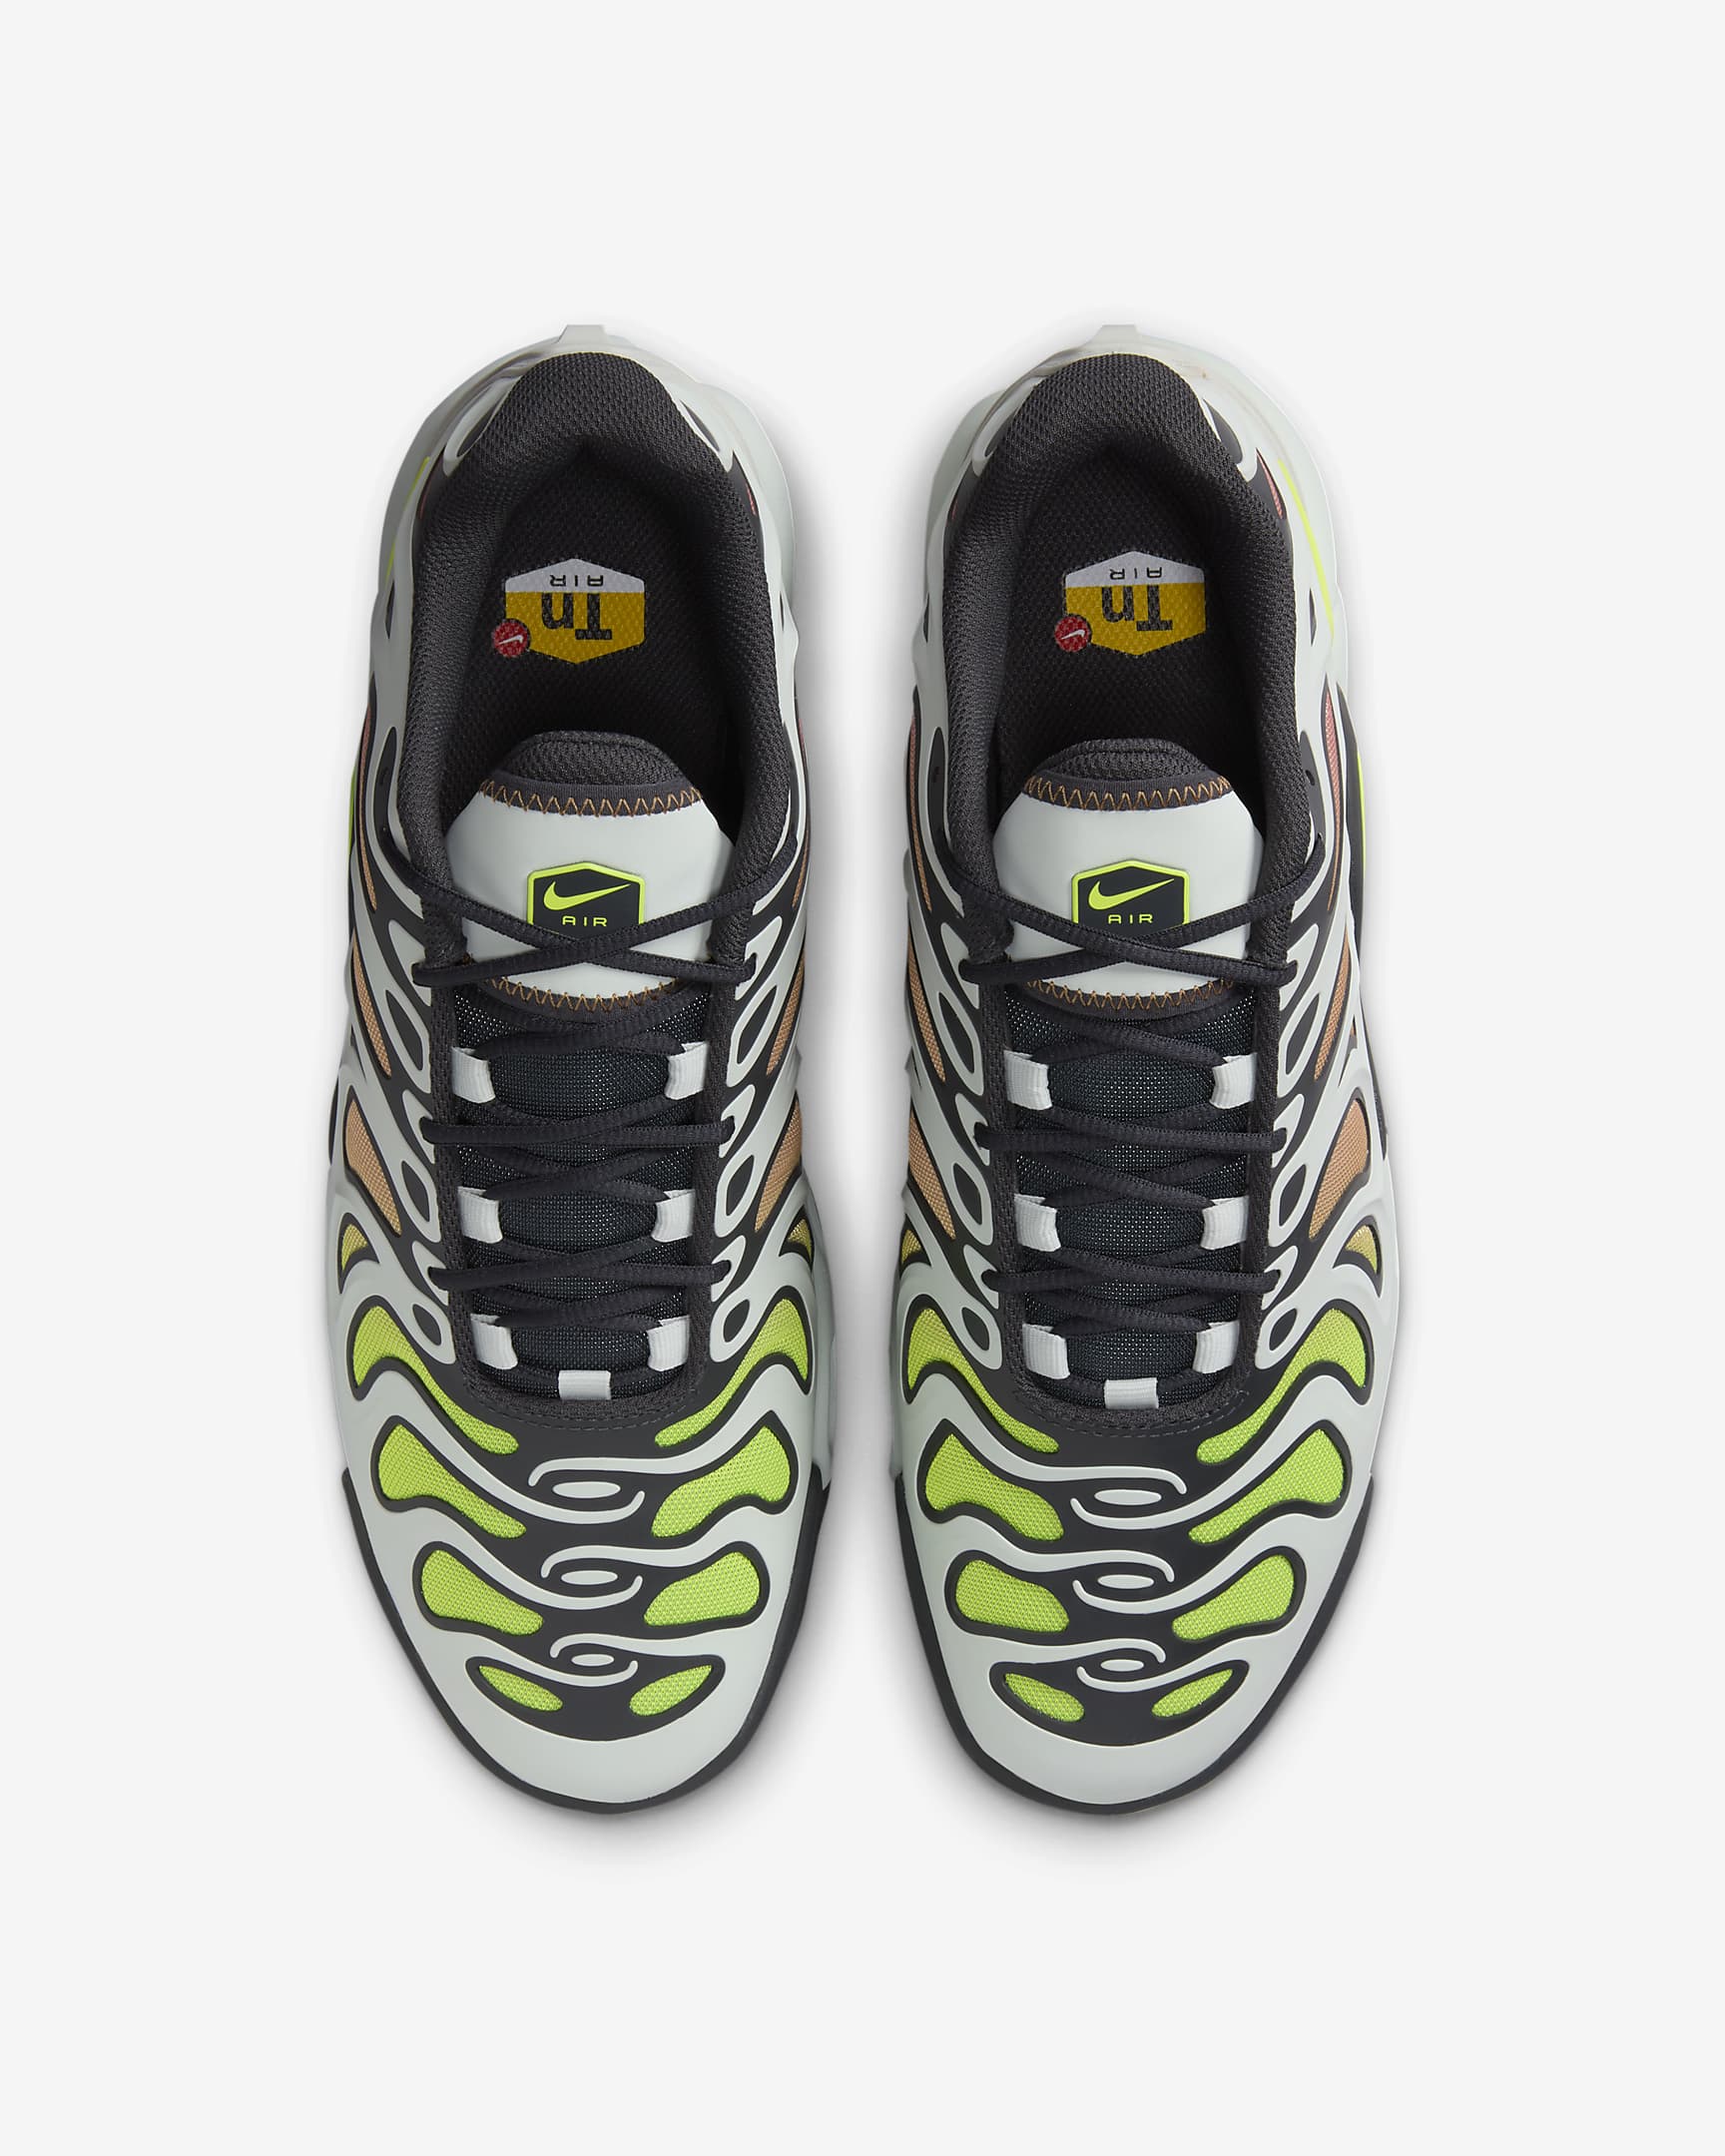 Sapatilhas Nike Air Max Plus Drift para homem - Prateado claro/Cinzento Smoke escuro/Castanho Amber/Volt